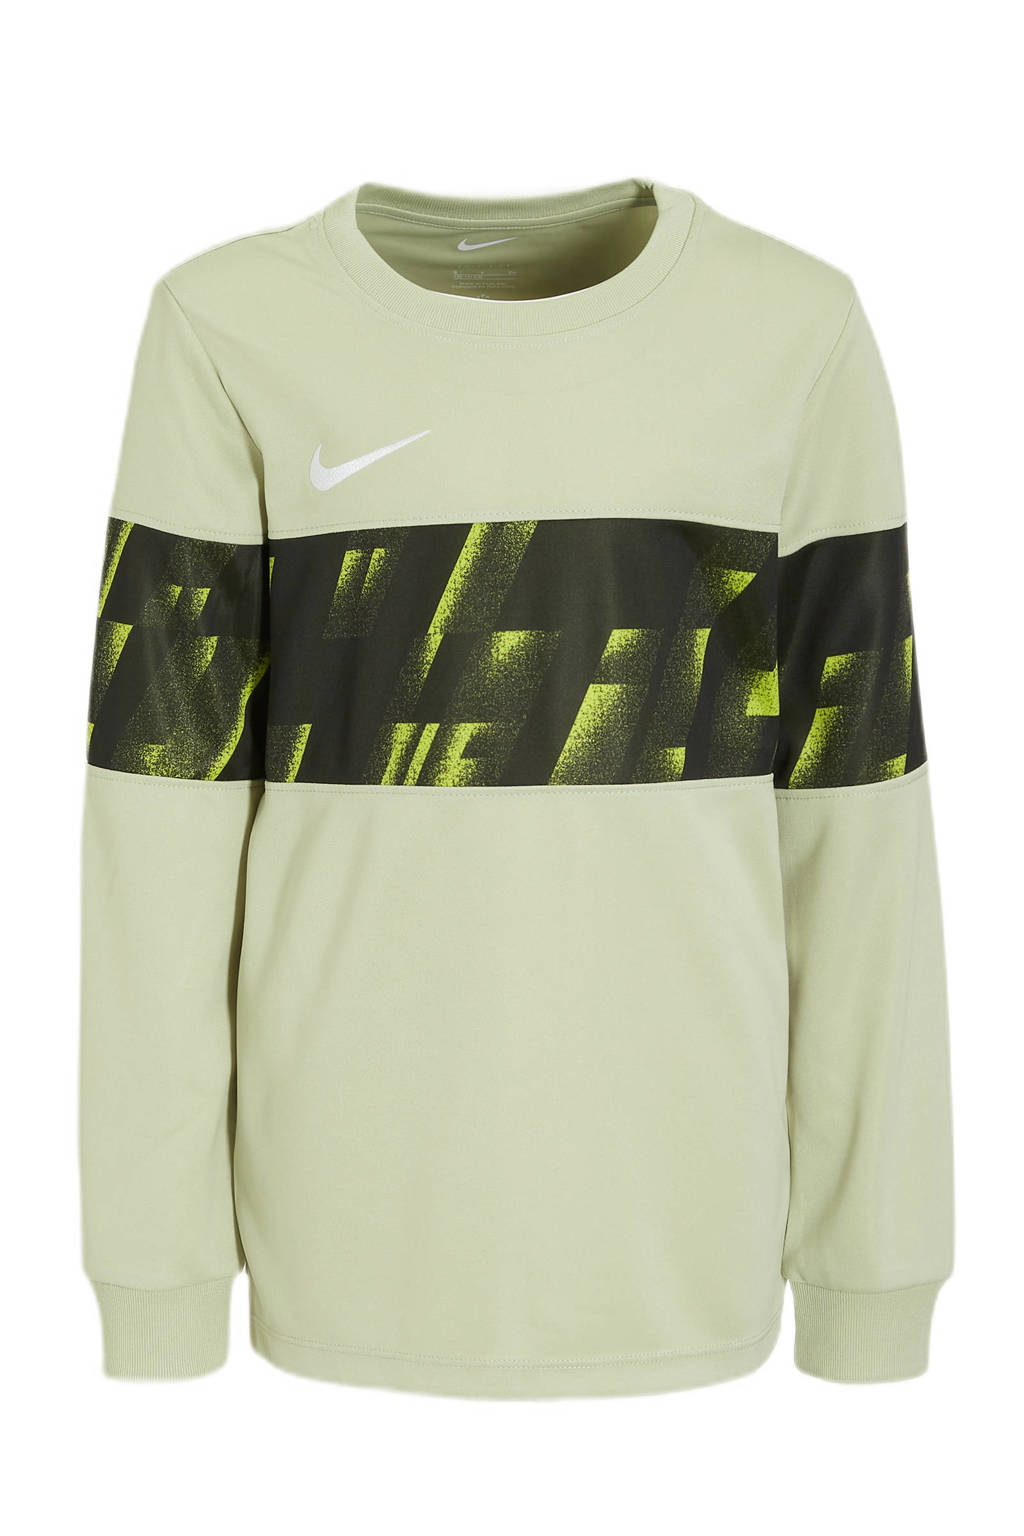 Nike   voetbalshirt ecru/zwart/limegroen